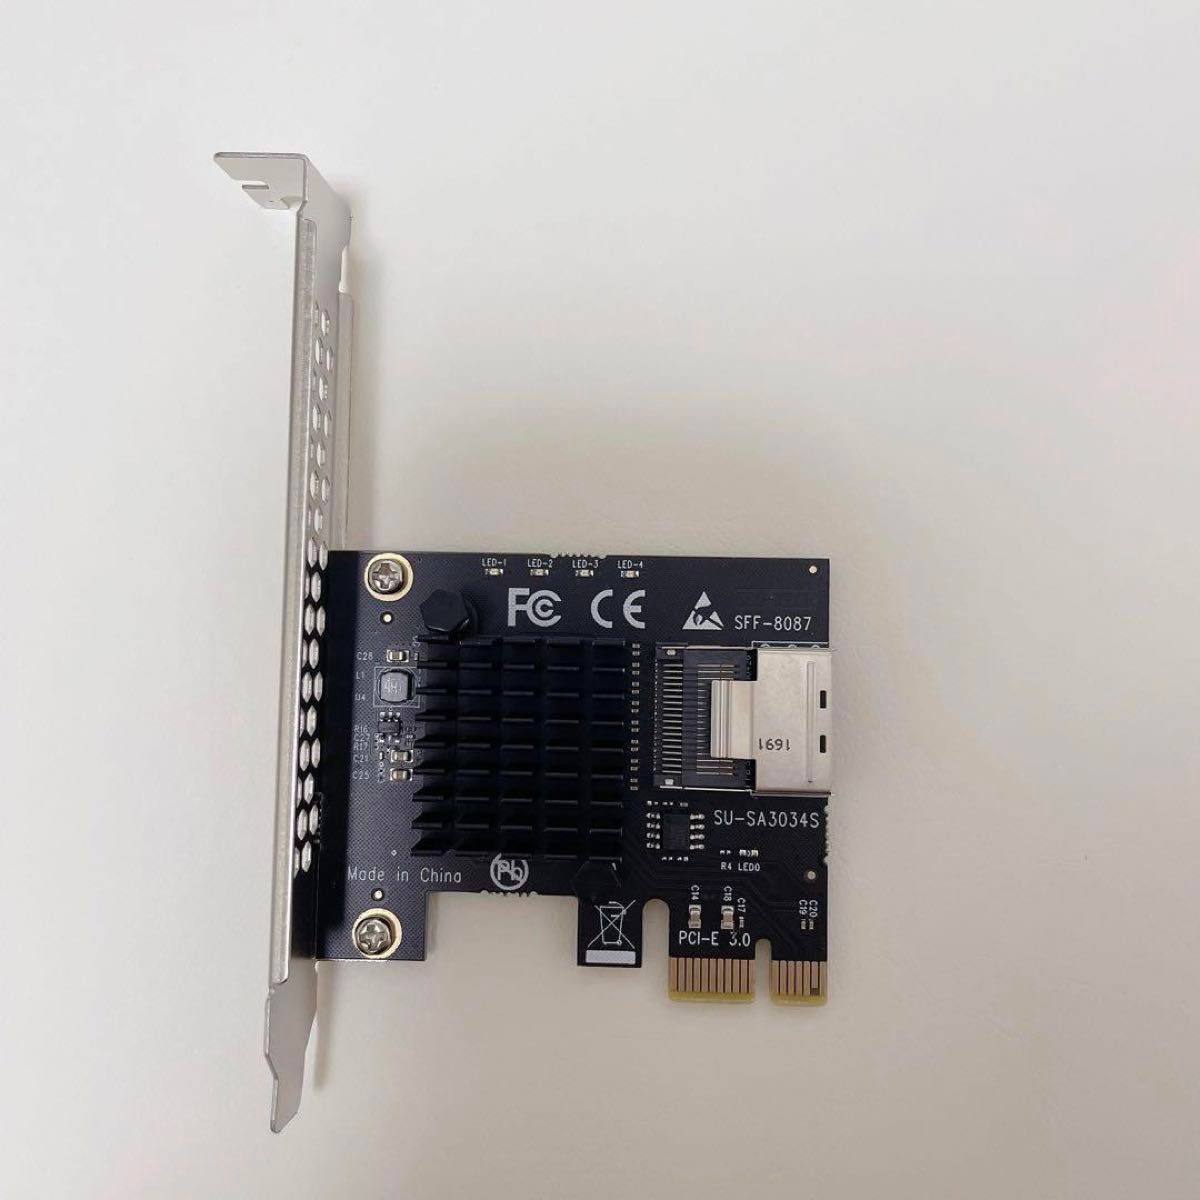 SATA カードSATA III 6 Gb/s コントローラー拡張カード、Linux 用 ロープロファイル ブラケット付き、